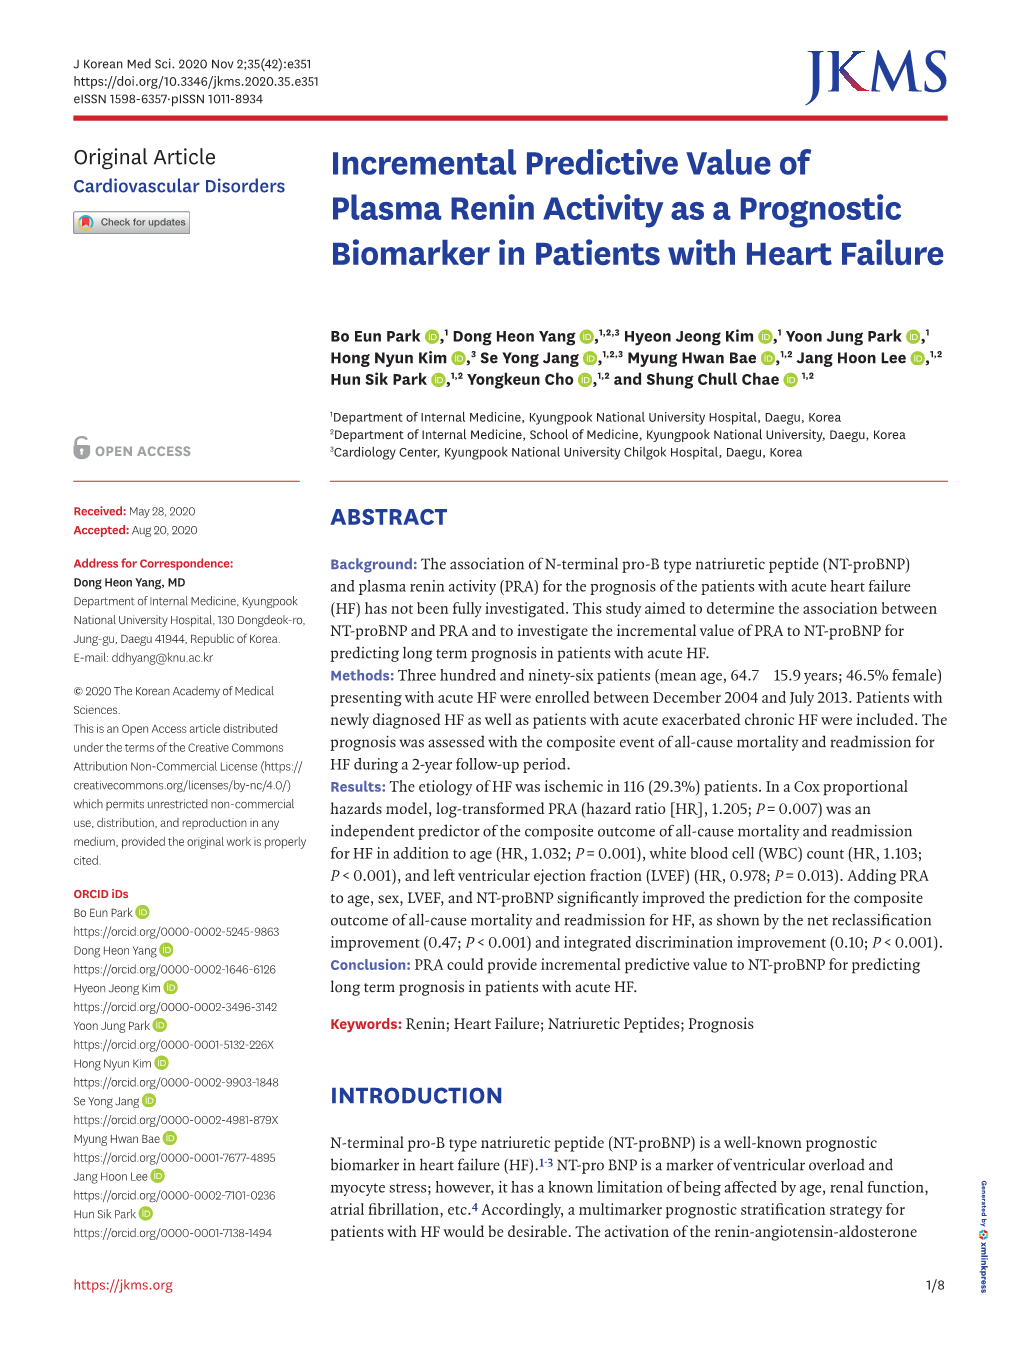 Incremental Predictive Value of Plasma Renin Activity As A